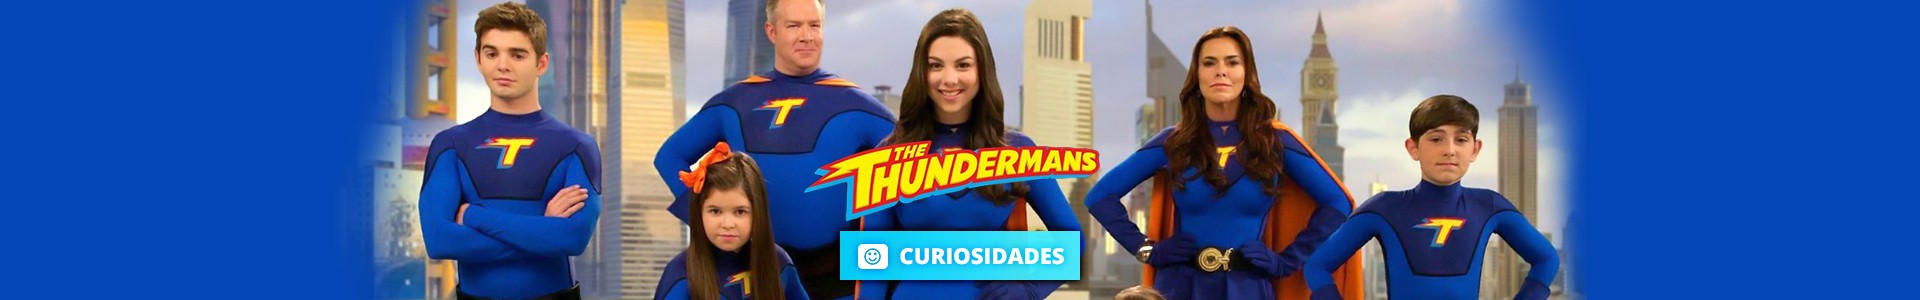 15 Curiosidades sobre The Thundermans, a série de super-heróis da Nickelodeon